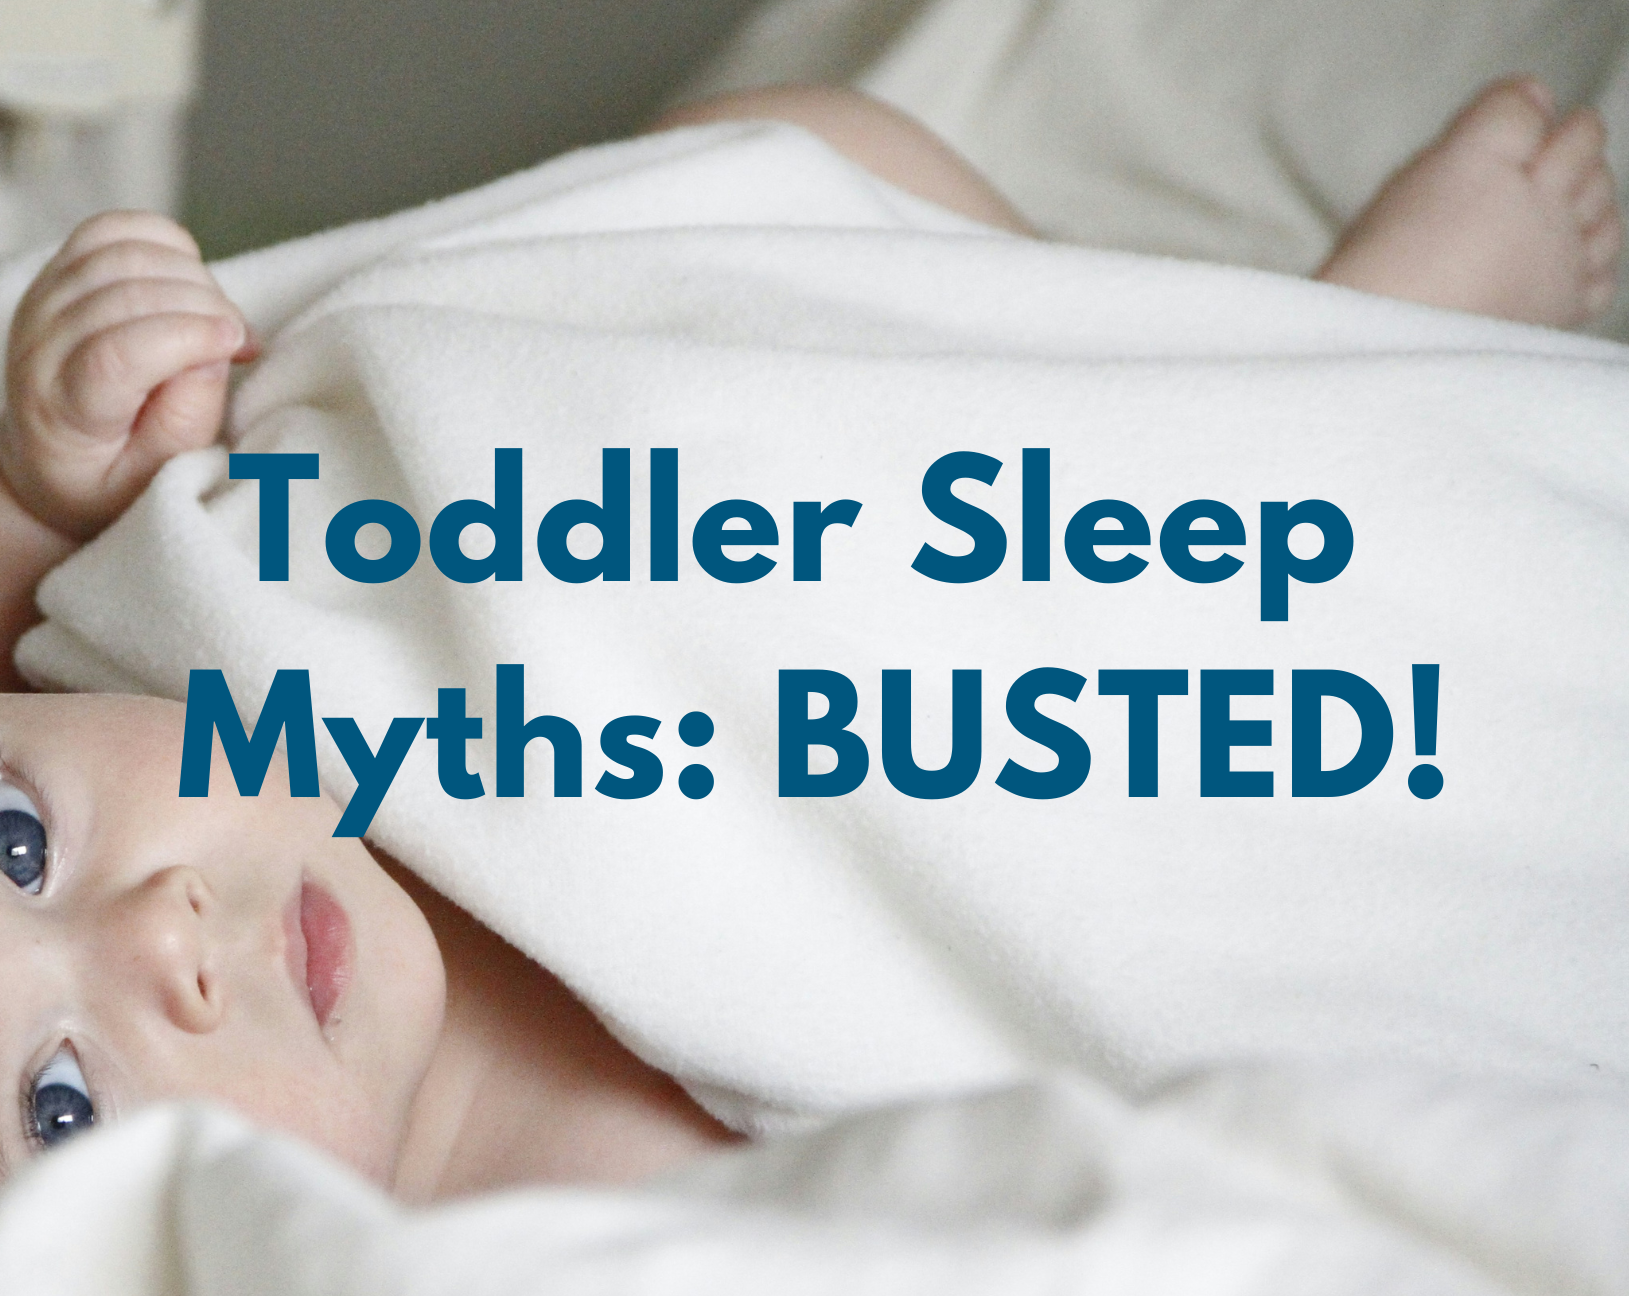 common toddler sleep myths